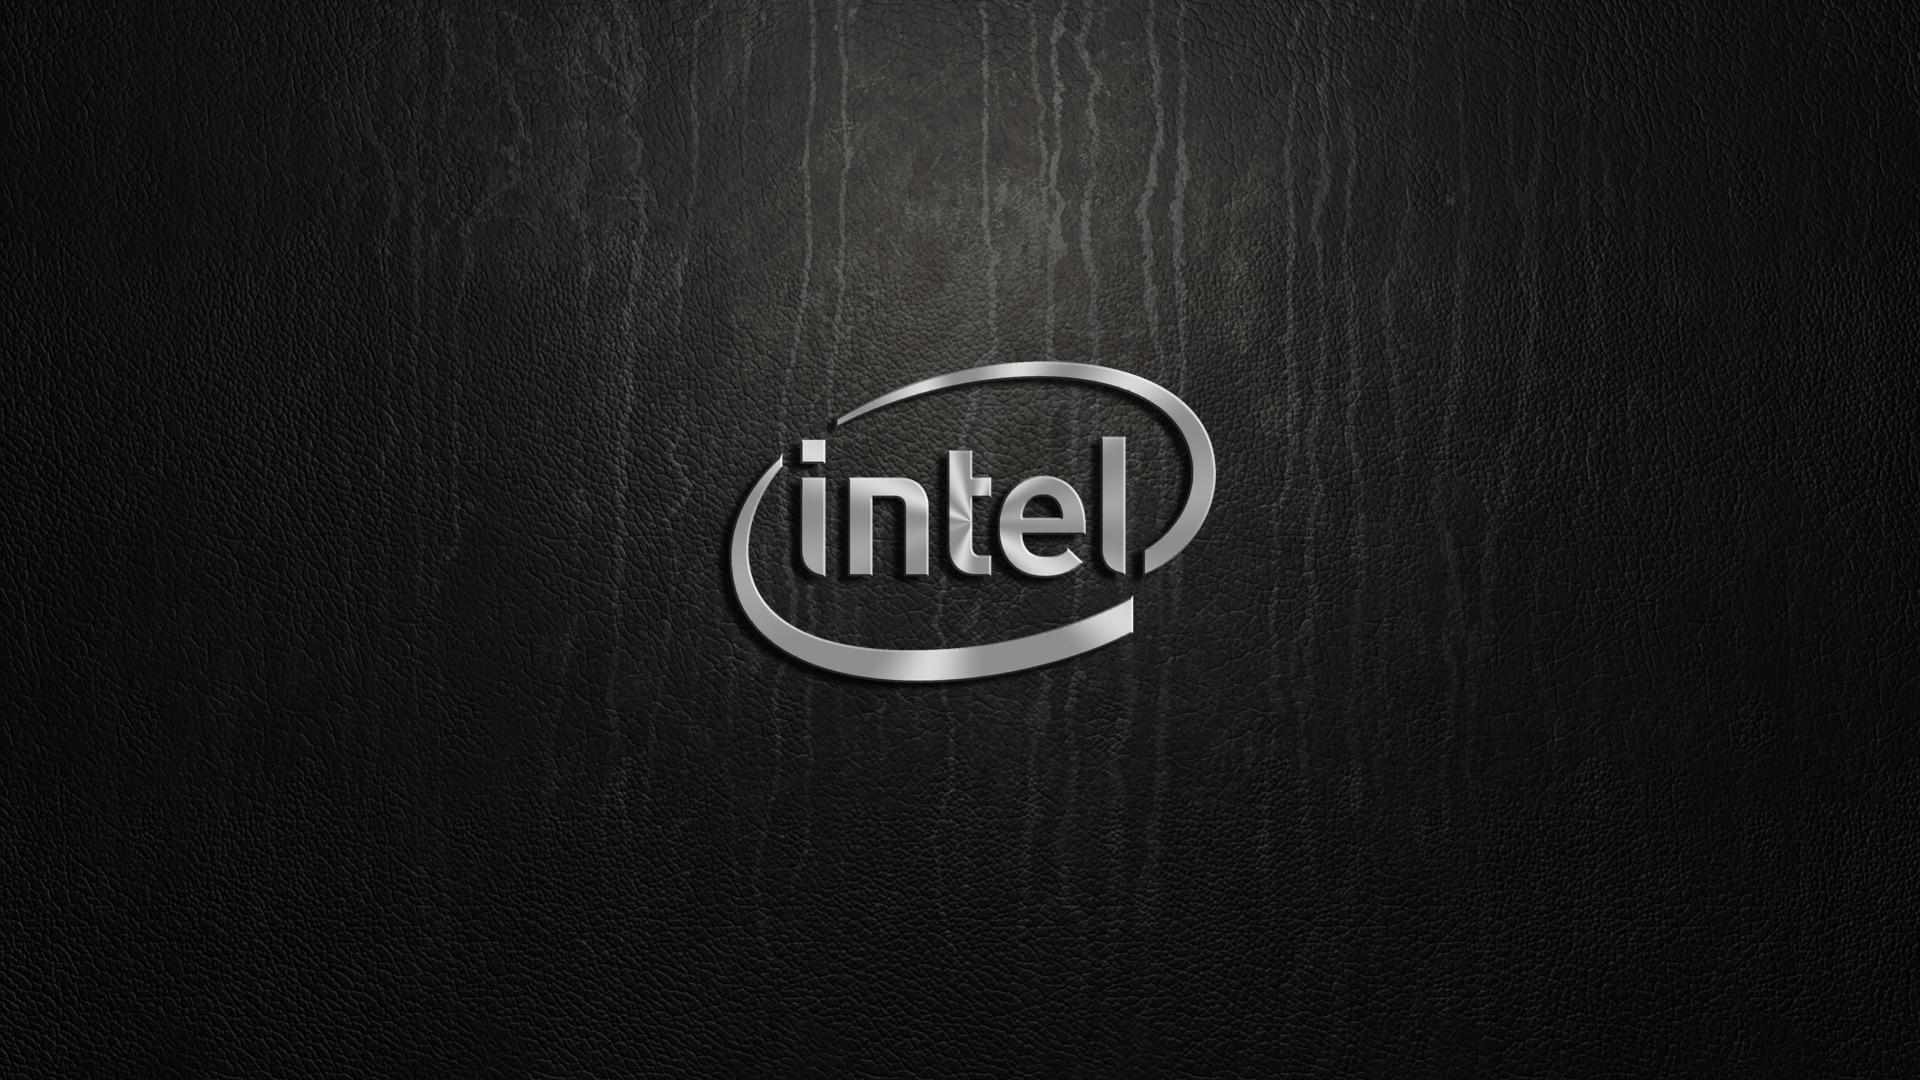 Intel logo Wallpaper #